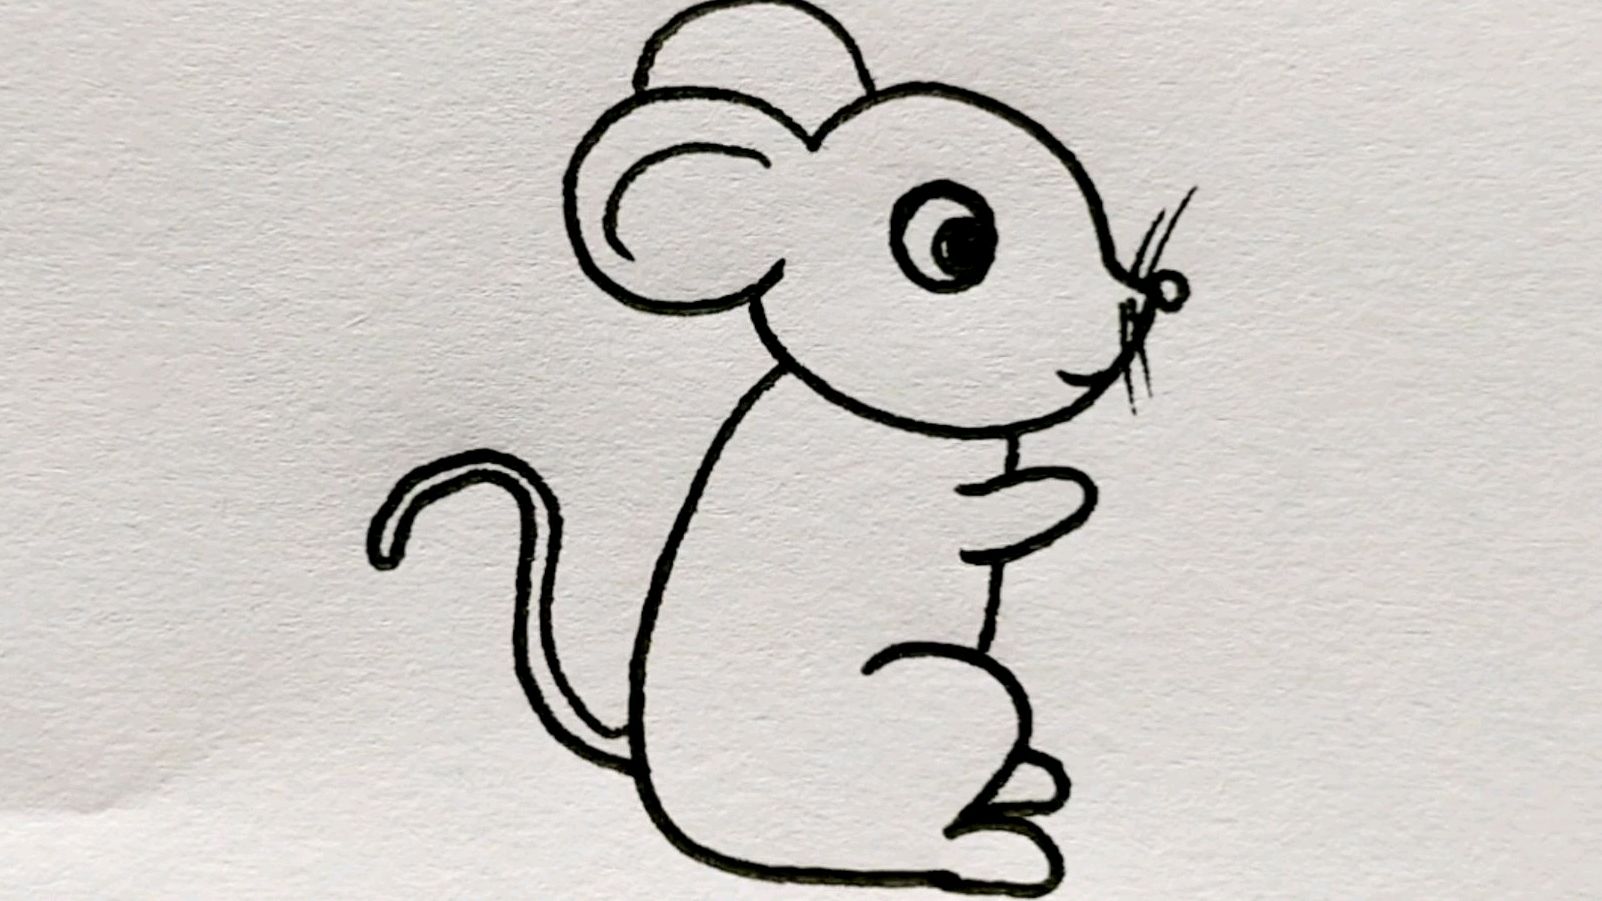 动物简笔画老鼠画画图片